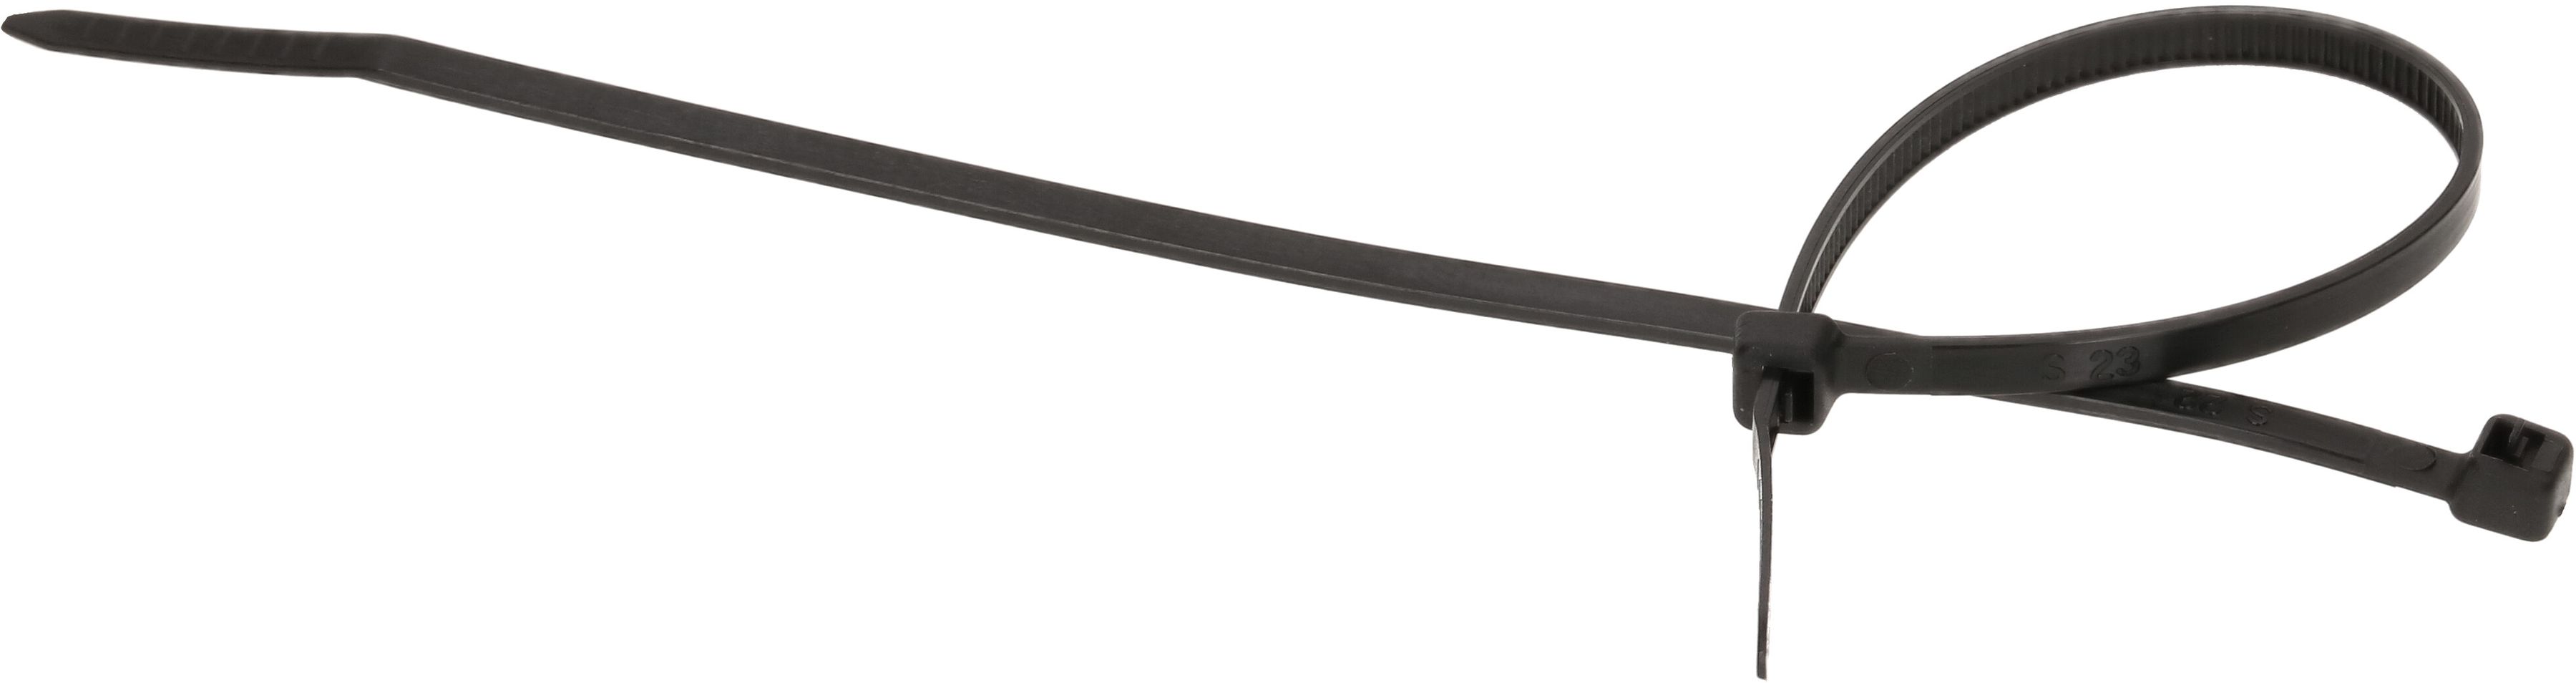 Kabelbinder wiederlösbar 3.5x150mm schwarz / 50 Stück